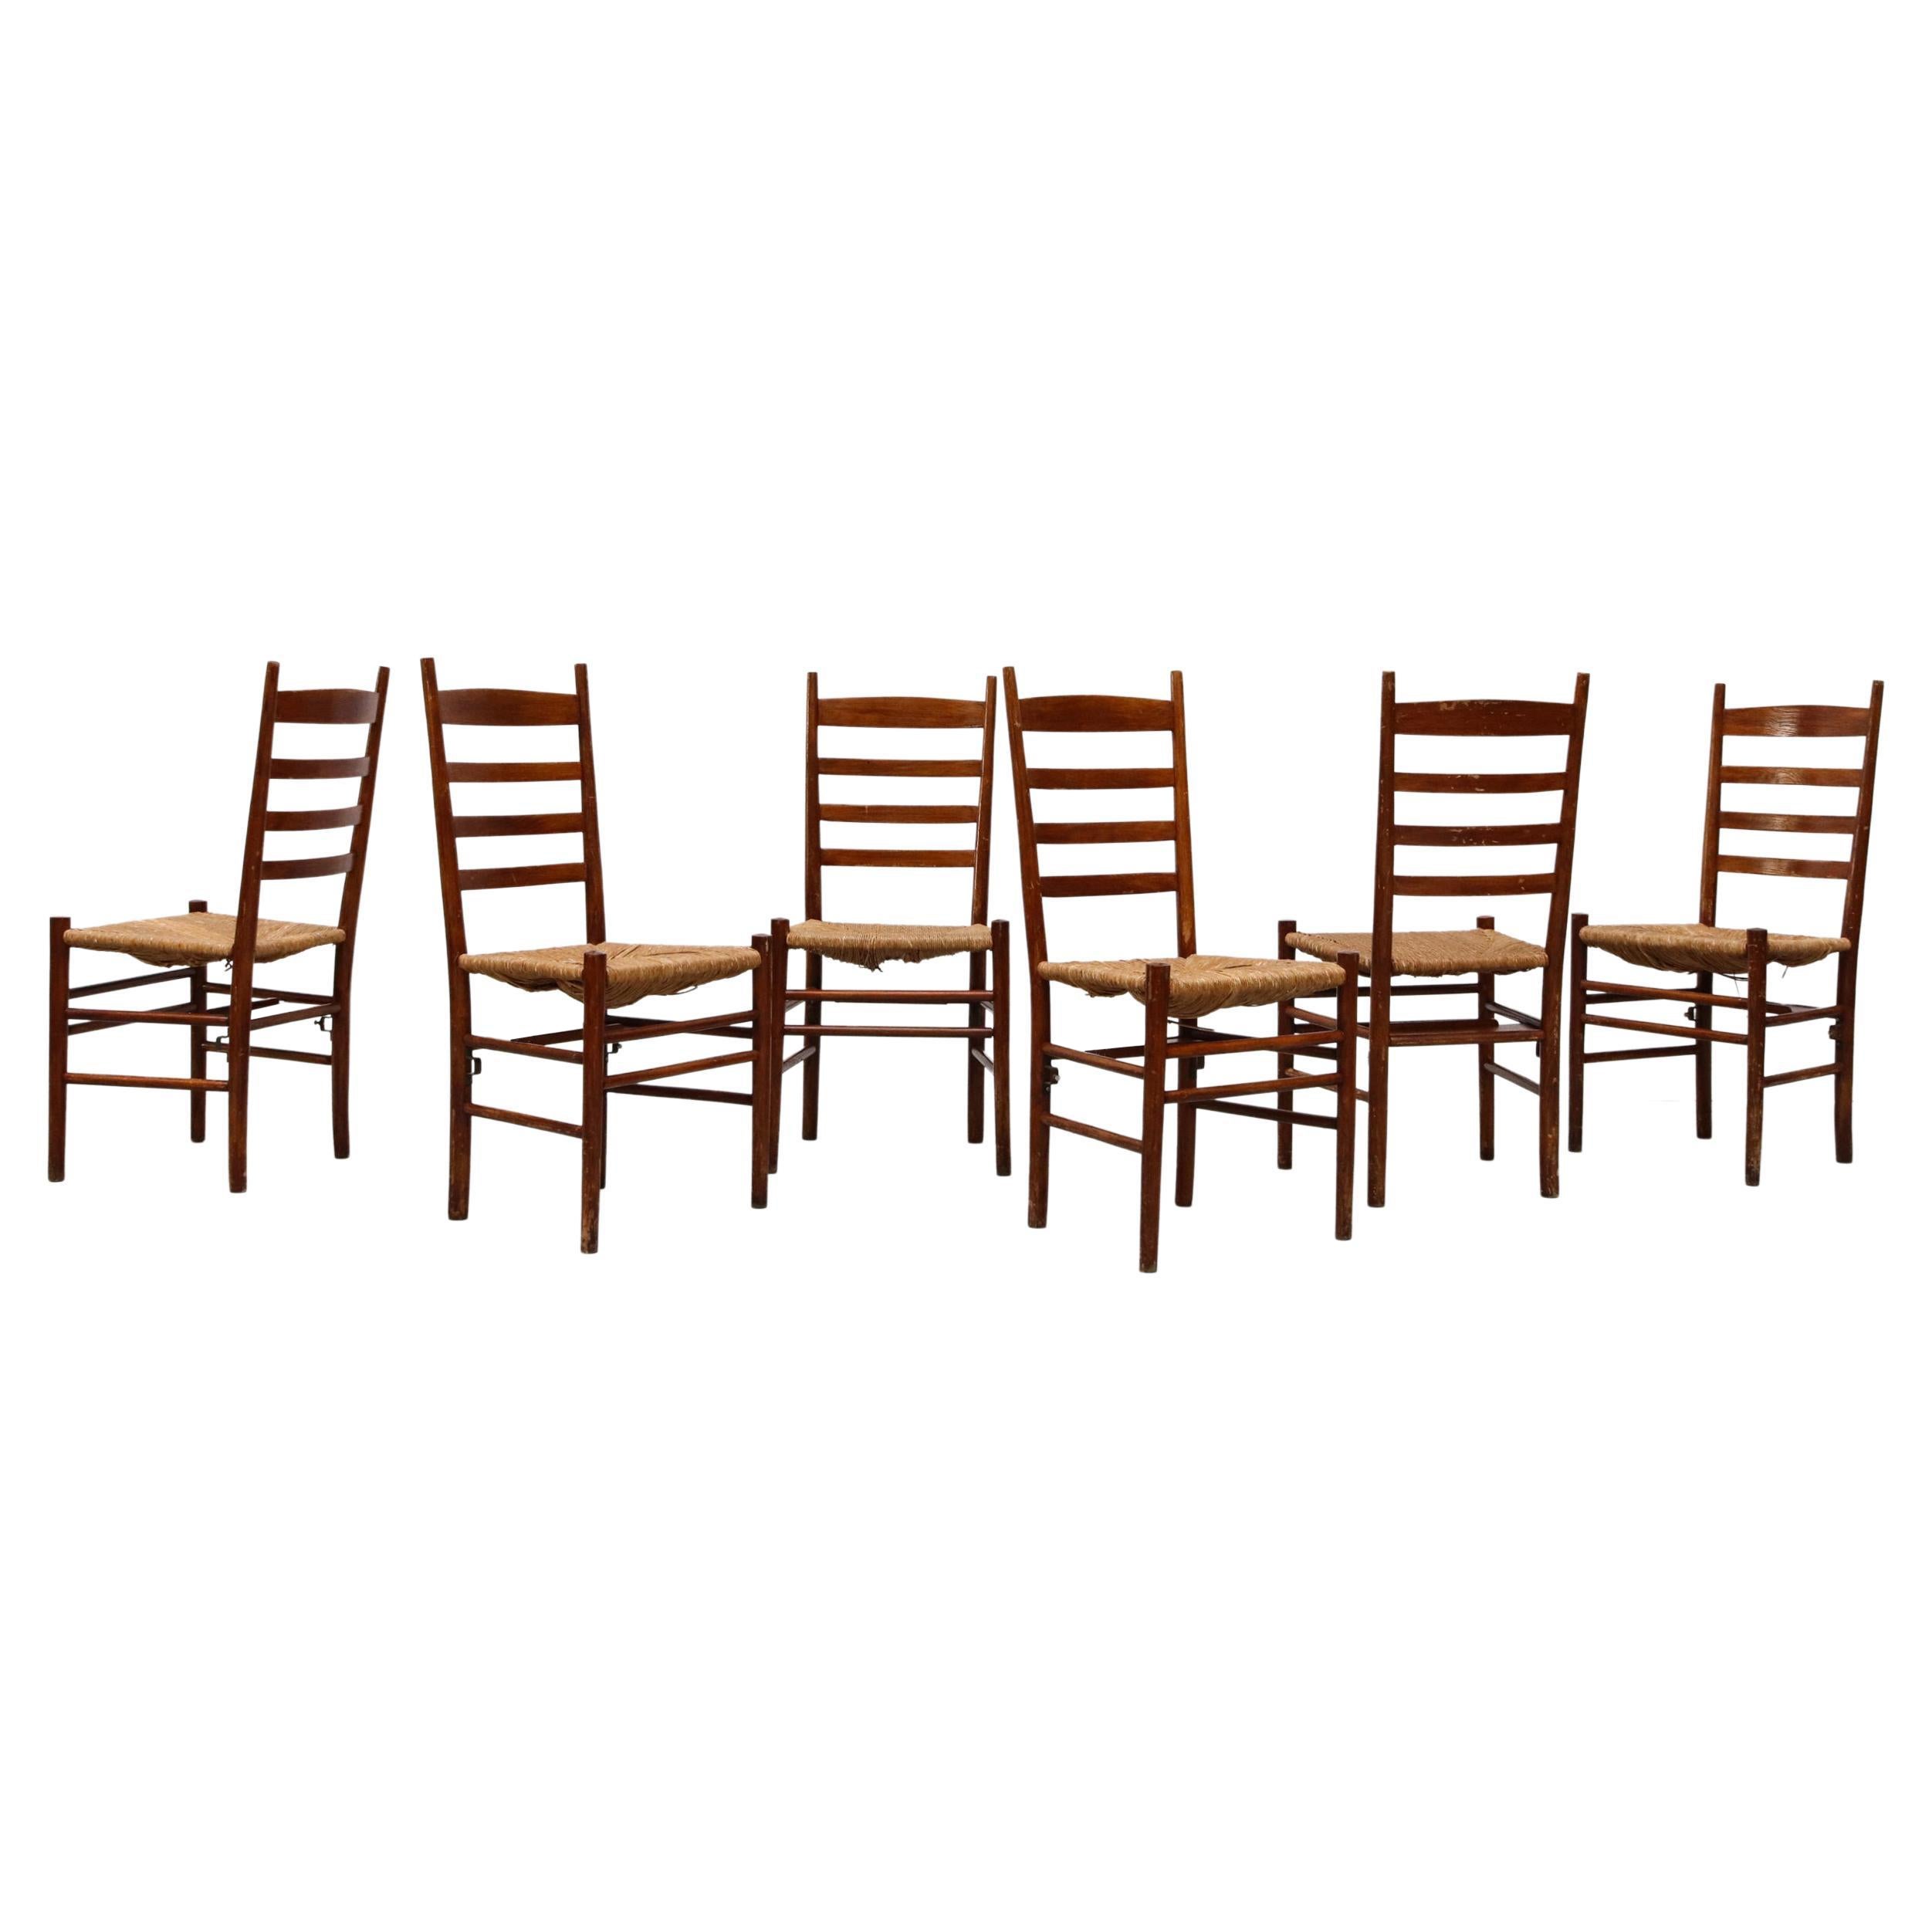 Esszimmerstühle im Quaker-Stil mit Leiterrückenlehne, Binsensitz und Bibelregal